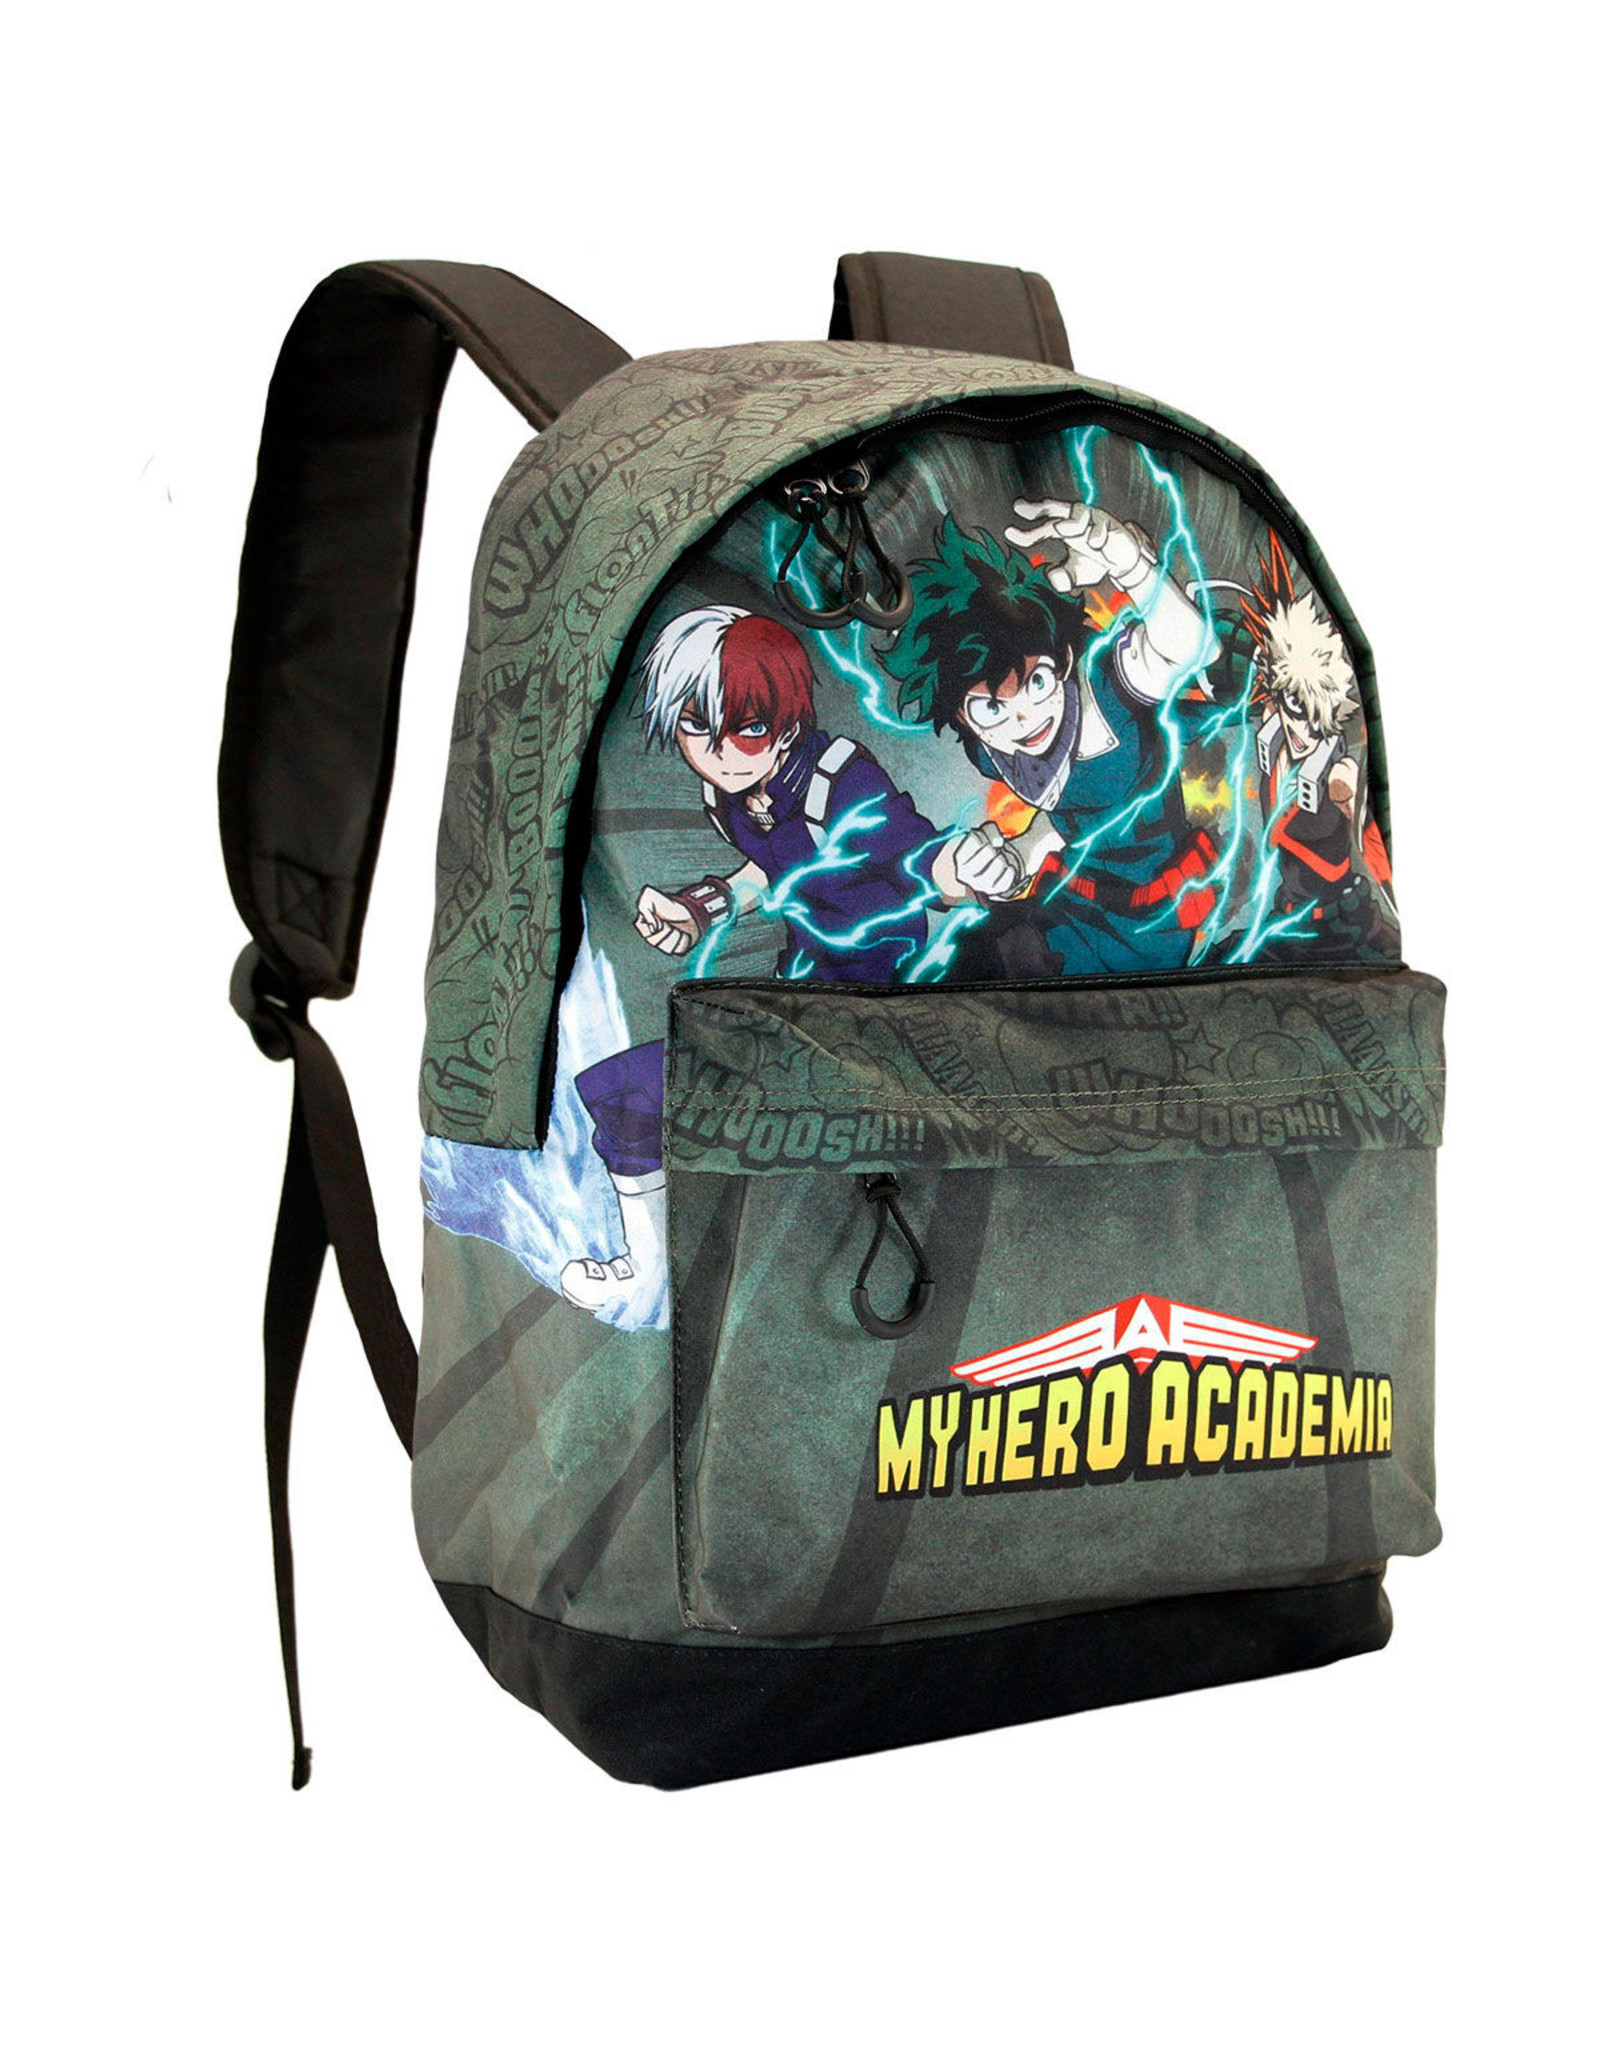 Karactermania Merchandise rugzakken - My Hero Academia Battle rugzak